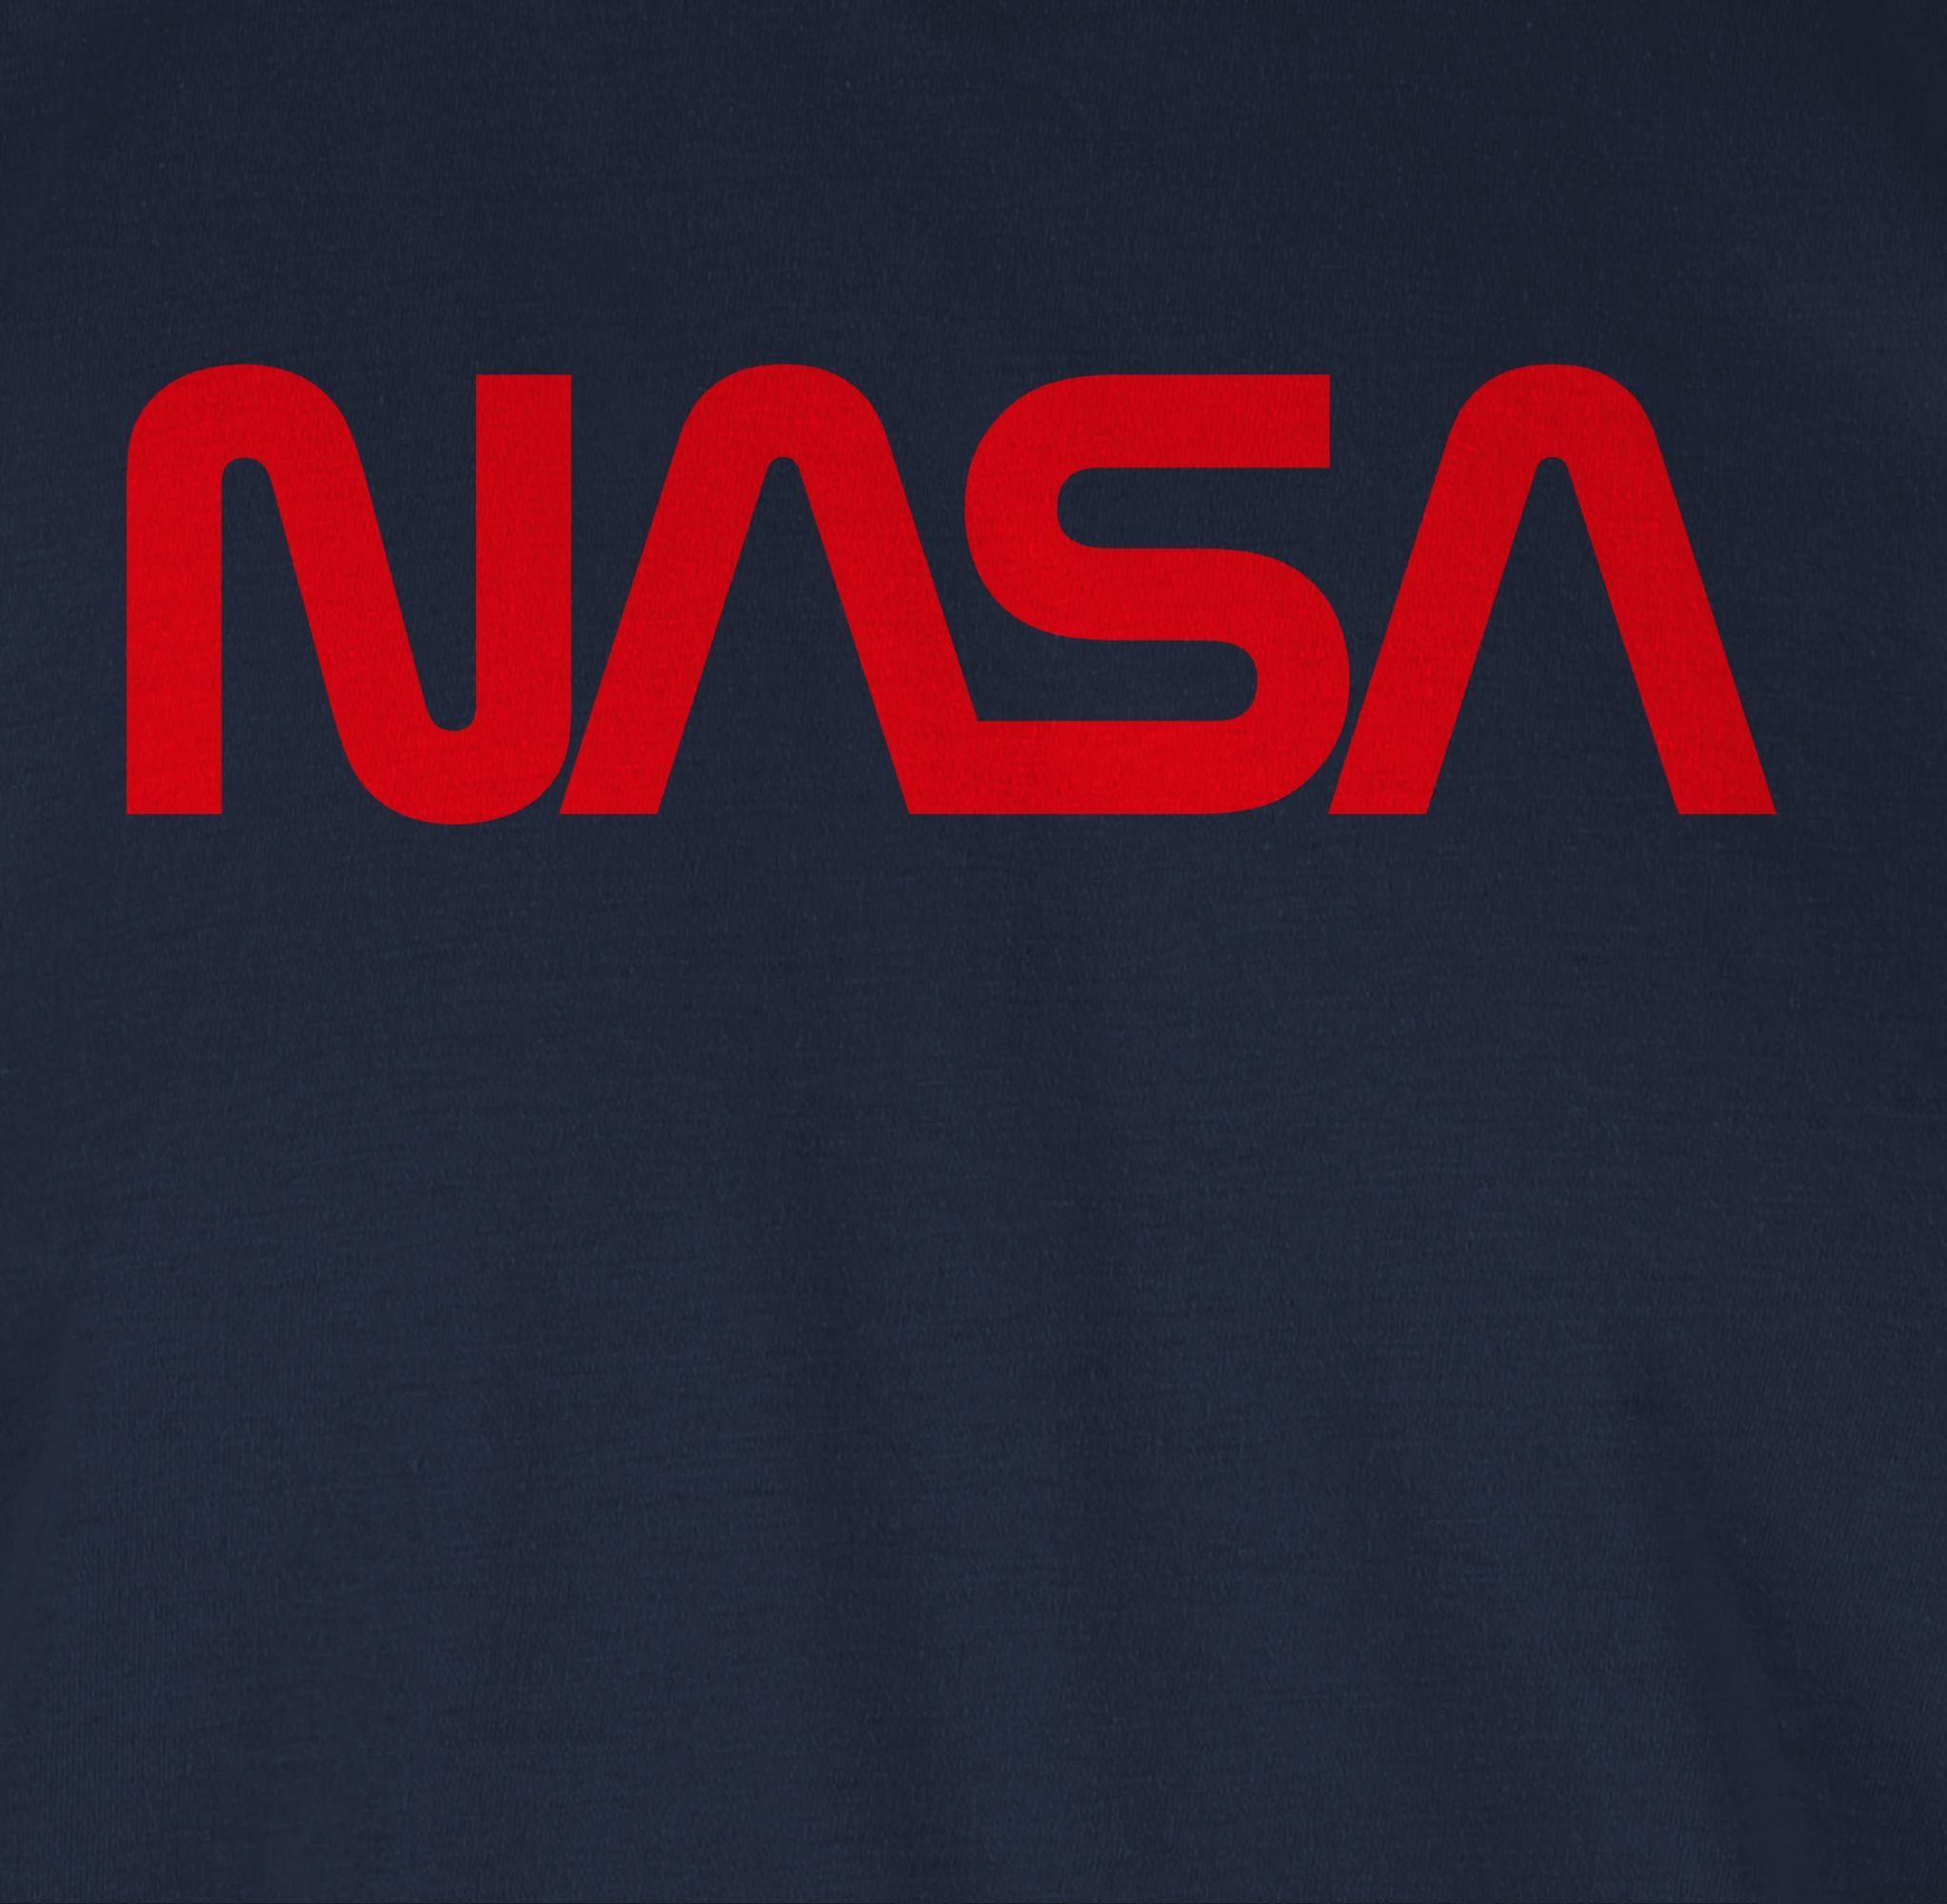 Geschenke Navy - 03 Weltraum Mondlandung Raumfahrt T-Shirt Nerd Nasa Blau Shirtracer Astronaut